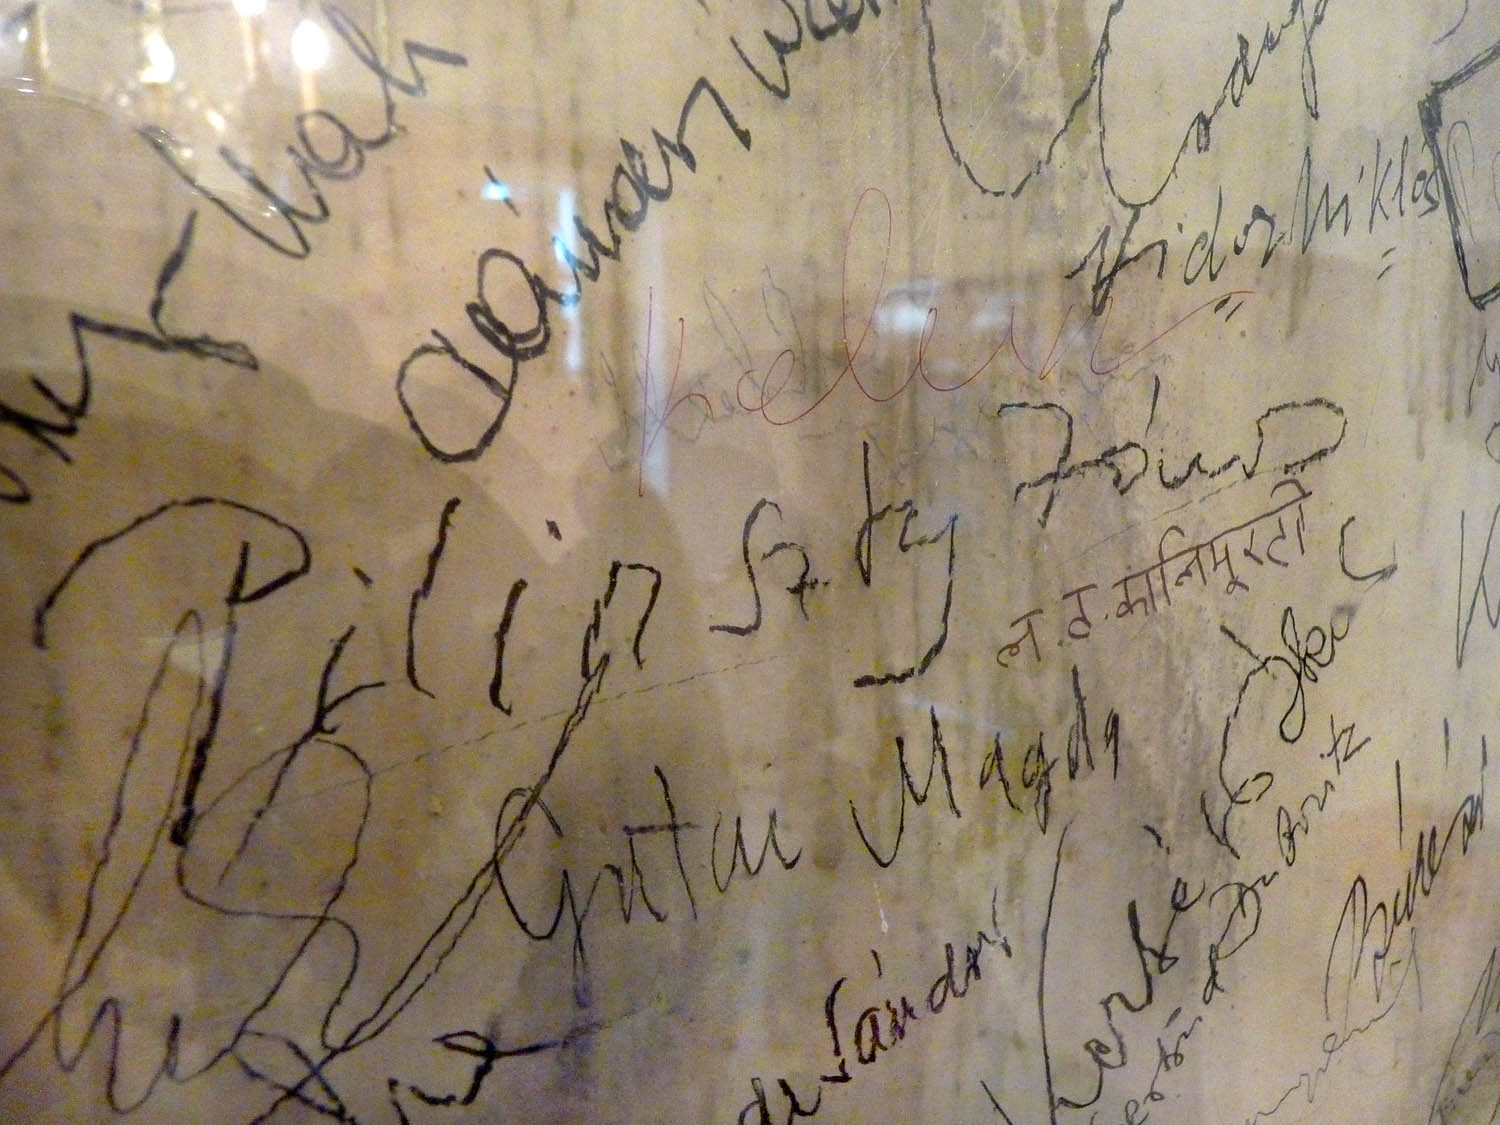 Írói aláírások a falon, középen tisztán olvasható Pilinszky János neve